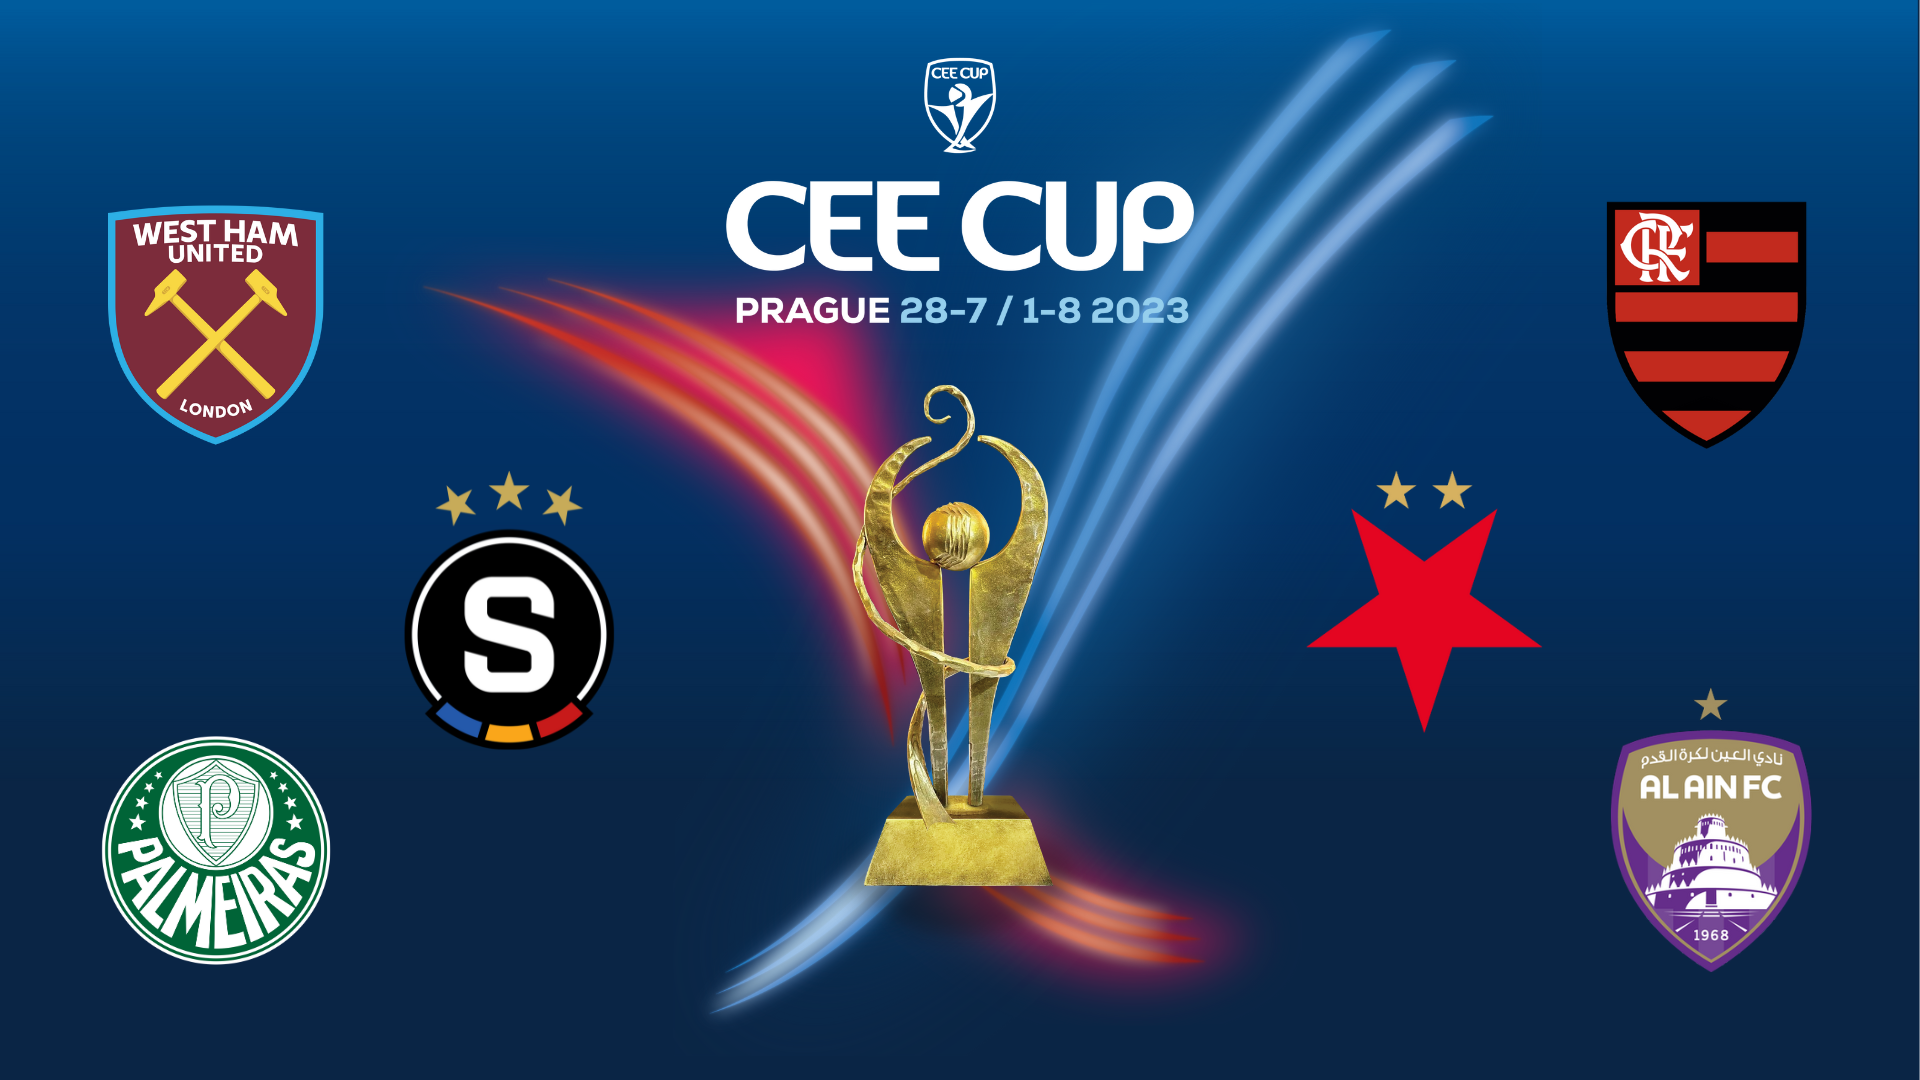 Slavia Prague U19 vs Palmeiras U19, CEE Cup